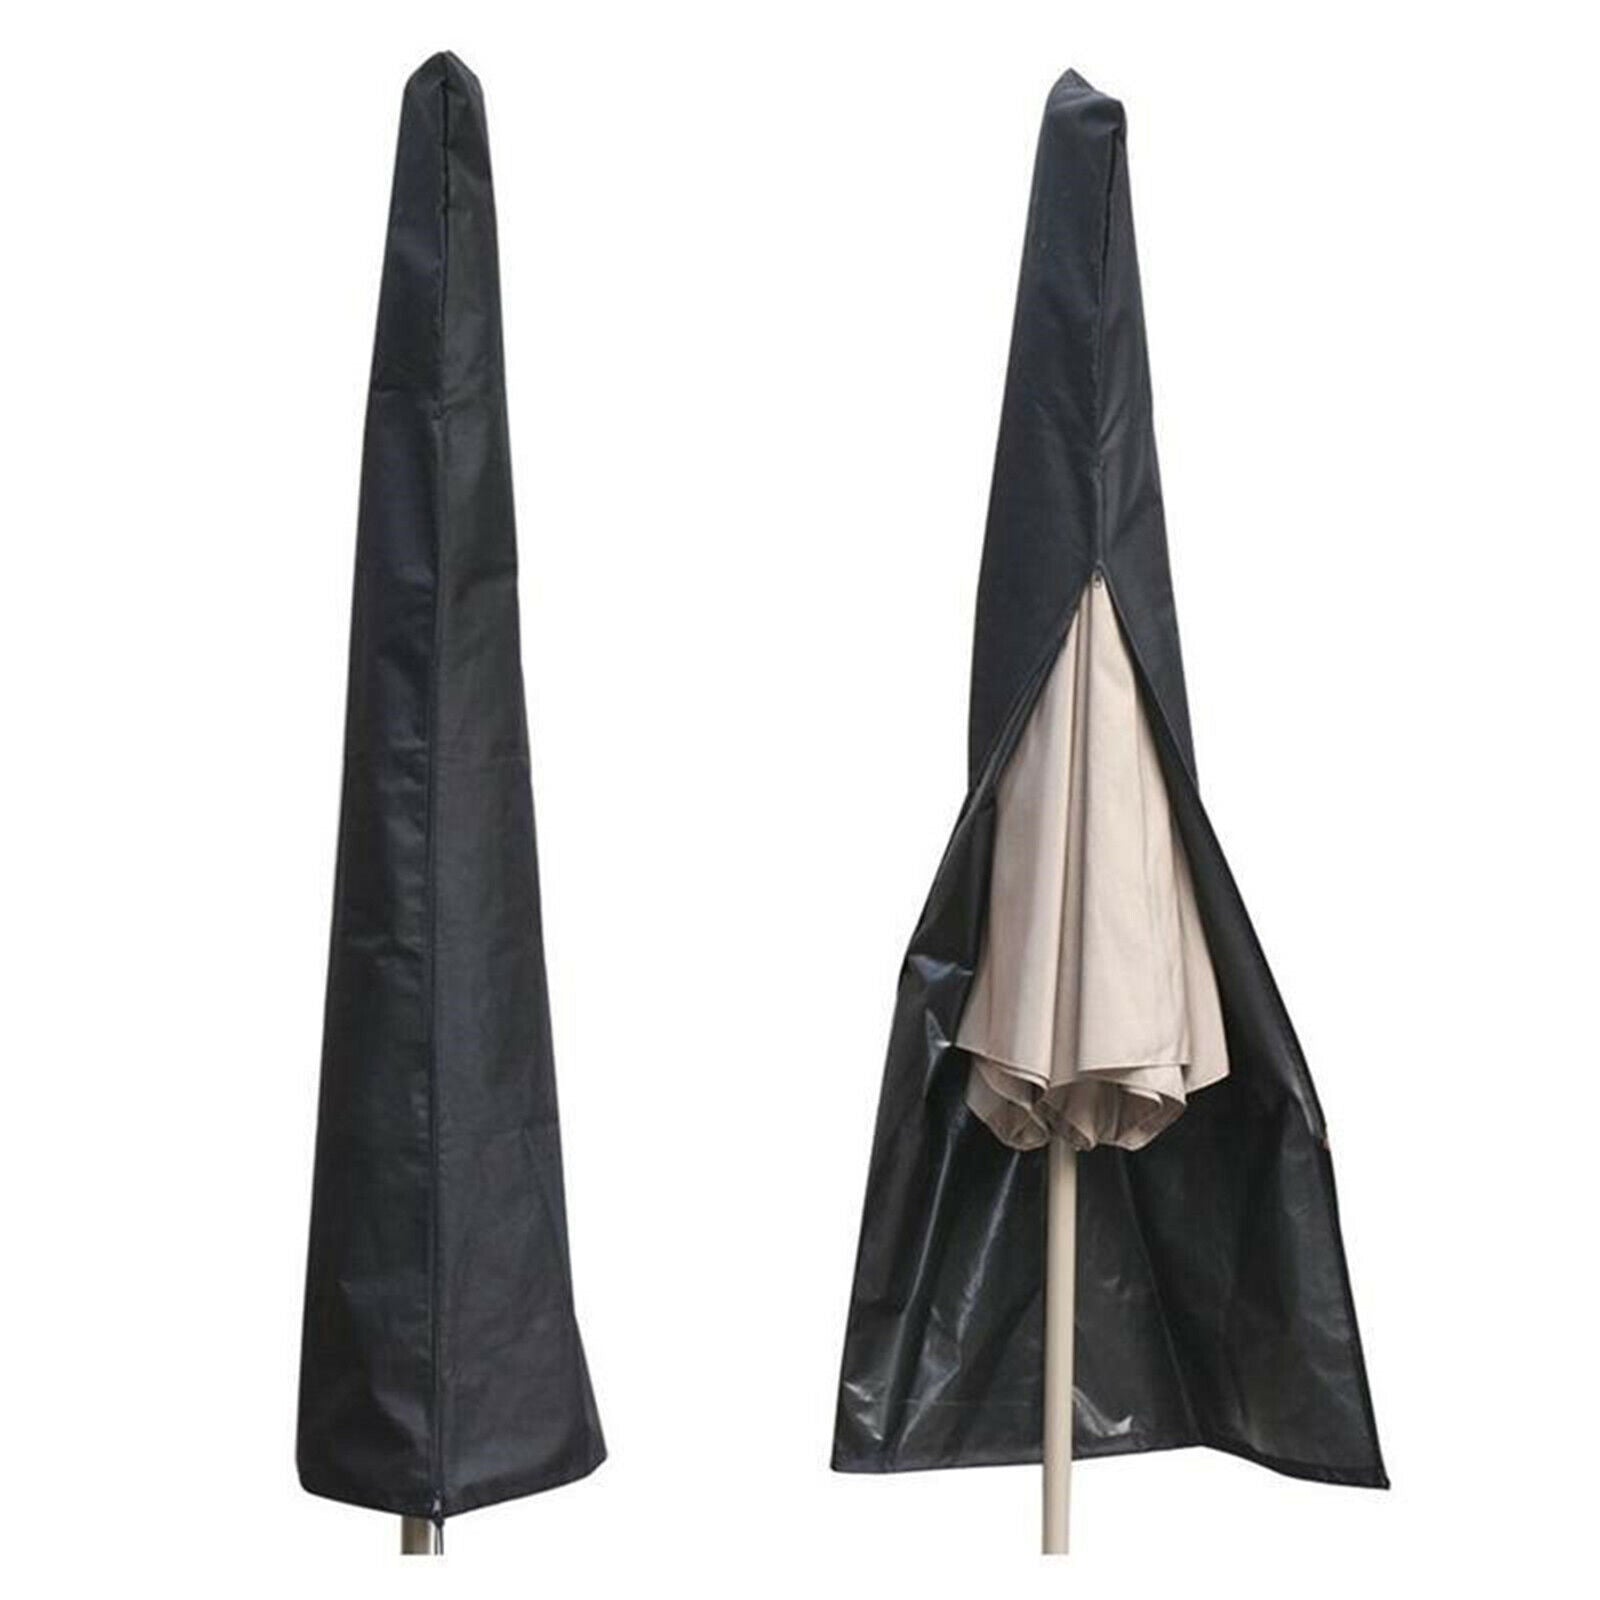 Parasol Umbrella Cover Cantilever Outdoor Patio Shield Garden Parasol Protective